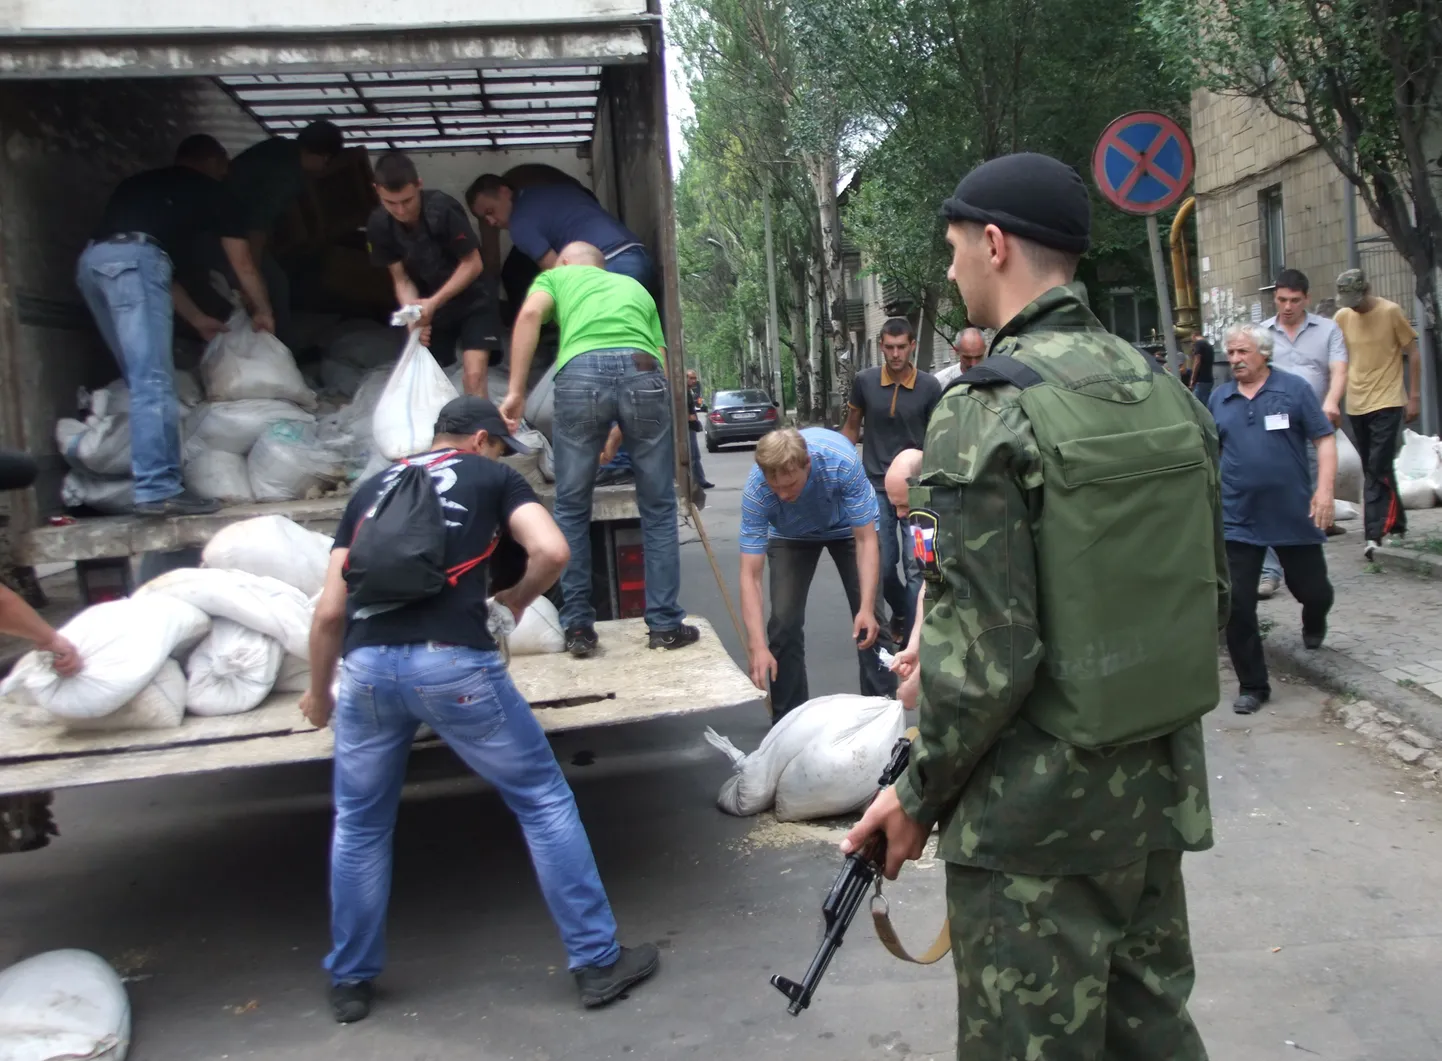 Donetski rahvavabariigi poolehoidjad askeldavad liivakottidega, mis on mõeldud barrikaadide ehitamiseks.